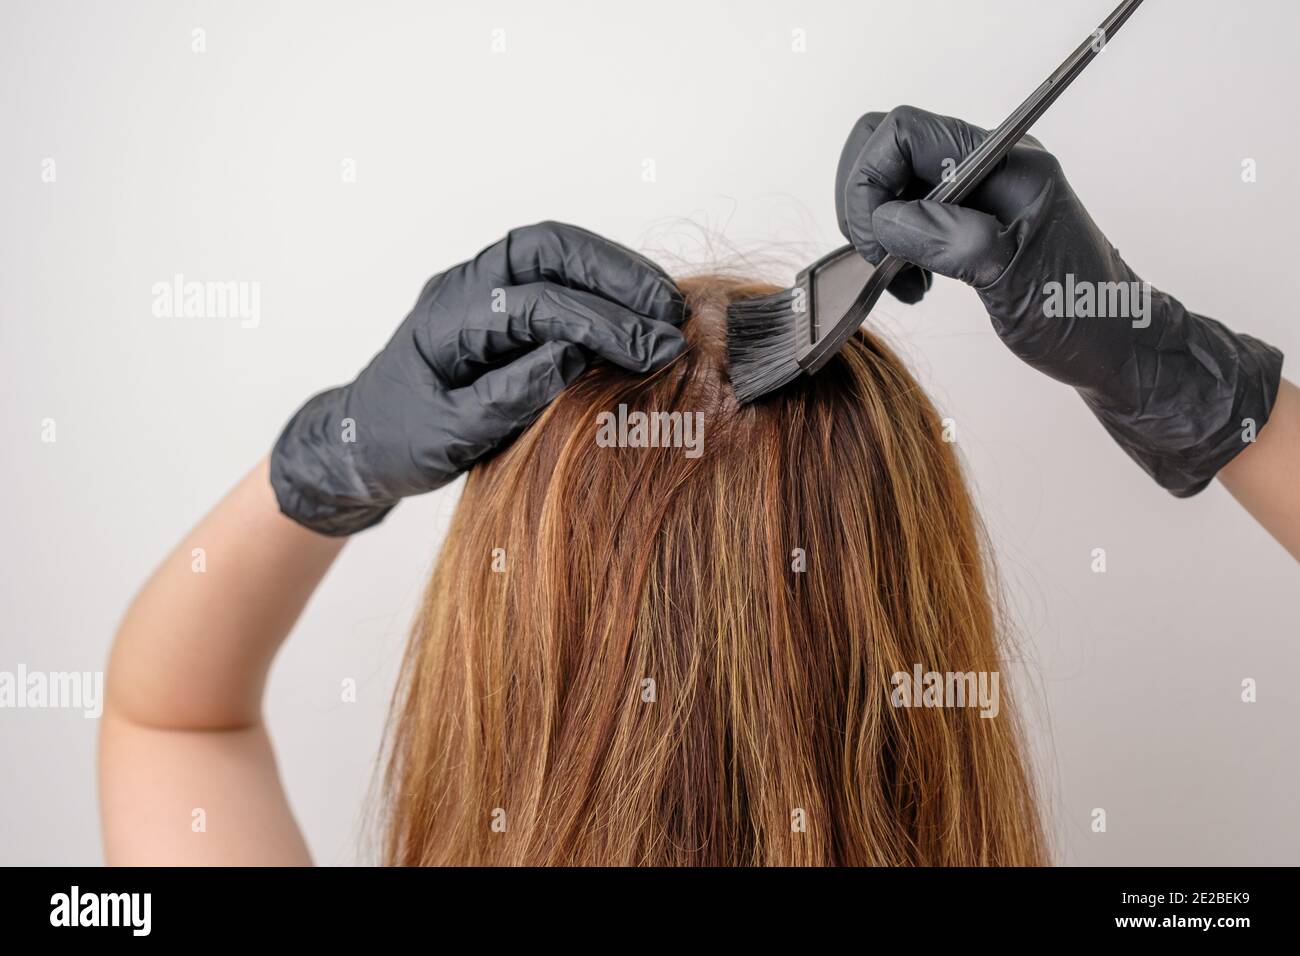 Frau färben Haarwurzeln mit einem Pinsel. Färben von grauen Haarwurzeln mit  einer komplexen Haarfärbung oder Balayage zu Hause Stockfotografie - Alamy